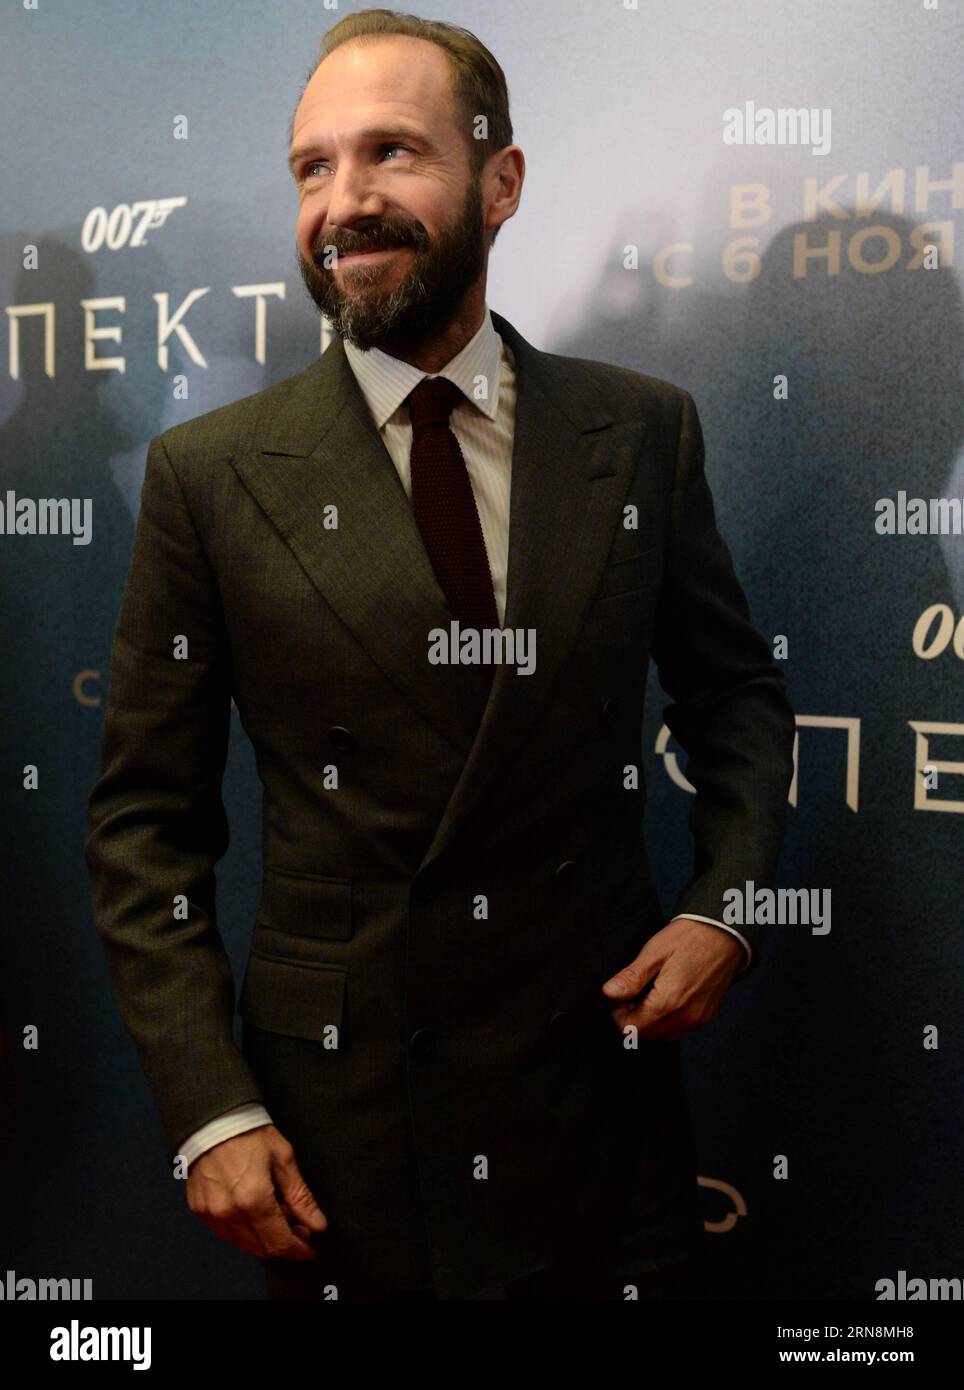 (151029) -- MOSCOU, le 29 octobre 2015 -- l'acteur britannique Ralph Fiennes arrive à la première du nouveau film de James Bond spectre à Moscou, Russie, le 29 octobre 2015.) RUSSIA-MOSCOW-CULTURE-spectre PREMIERE PavelxBednyakov PUBLICATIONxNOTxINxCHN James Bond spectre - Filmpremiere in Moscow OCT 29 2015 l'acteur britannique Ralph Fiennes arrive AU nouveau James Bond Movie Specter Premiere in Moscow Russia OCT 29 2015 Russia Moscow Culture Specter Premiere in Moscow Banque D'Images